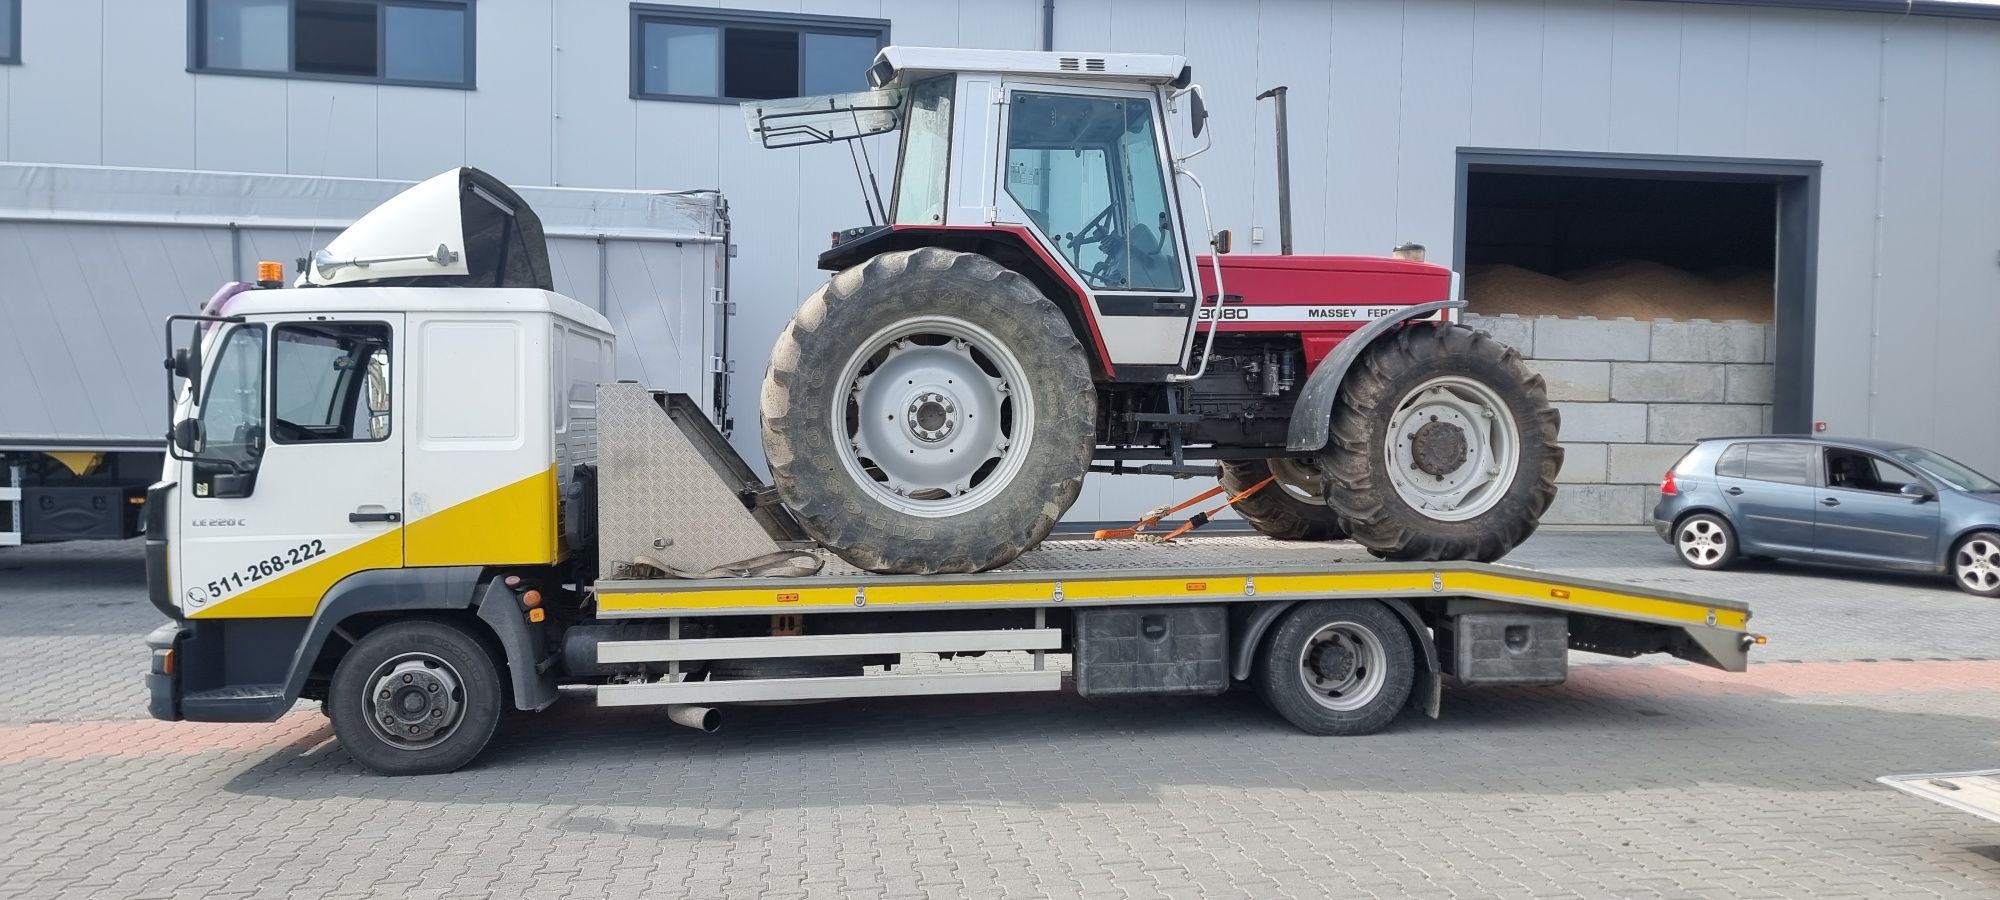 Pomoc Drogowa 24/7 Laweta Autolaweta Transport Holowanie 16 ton